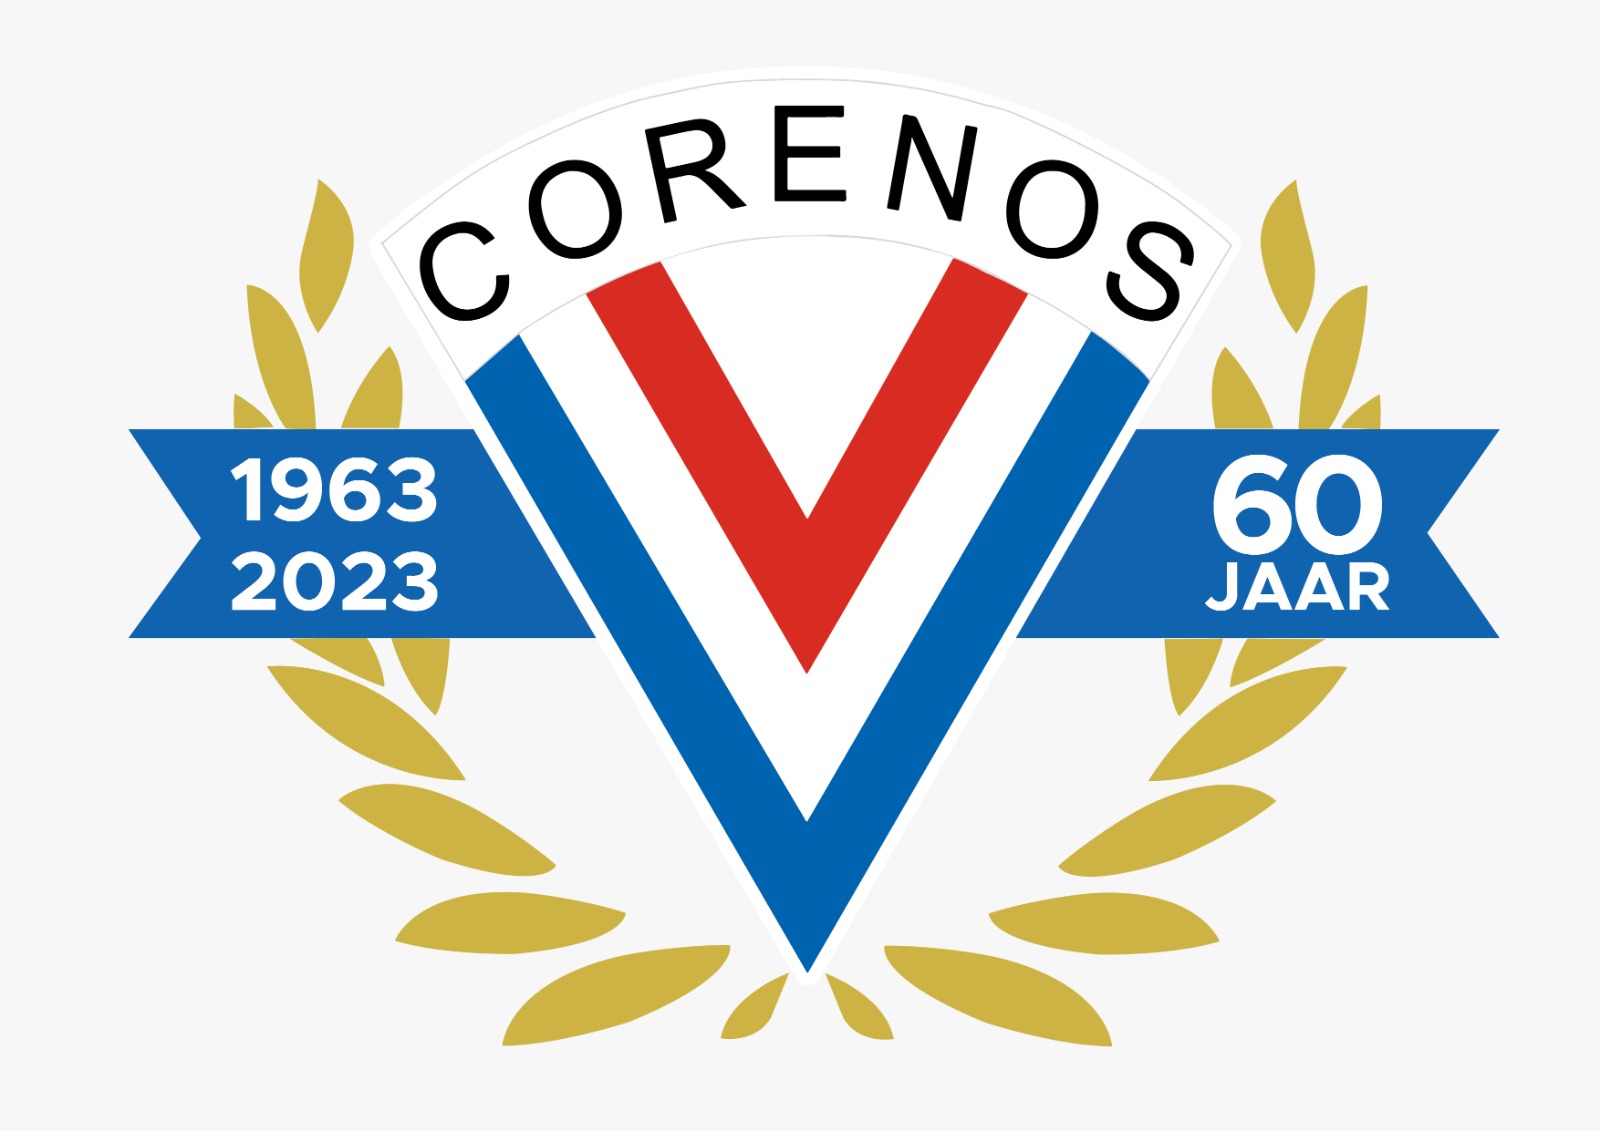 V.V. Corenos jubileumjaar 2023